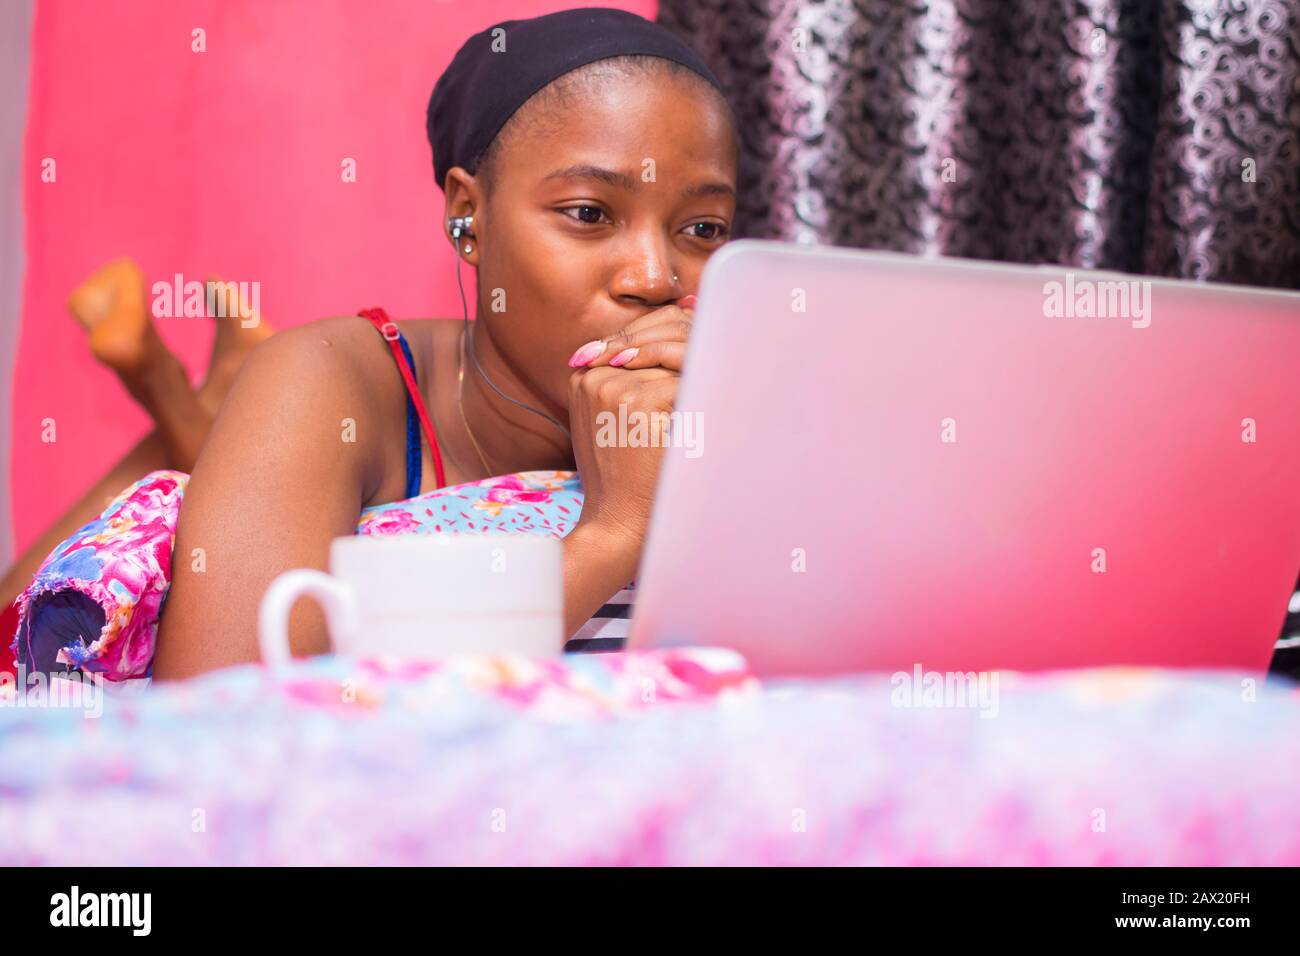 jolie dame africaine à la maison seule dans sa chambre, regarder un film sur son ordinateur portable a l'air effrayé et inconfortable Banque D'Images